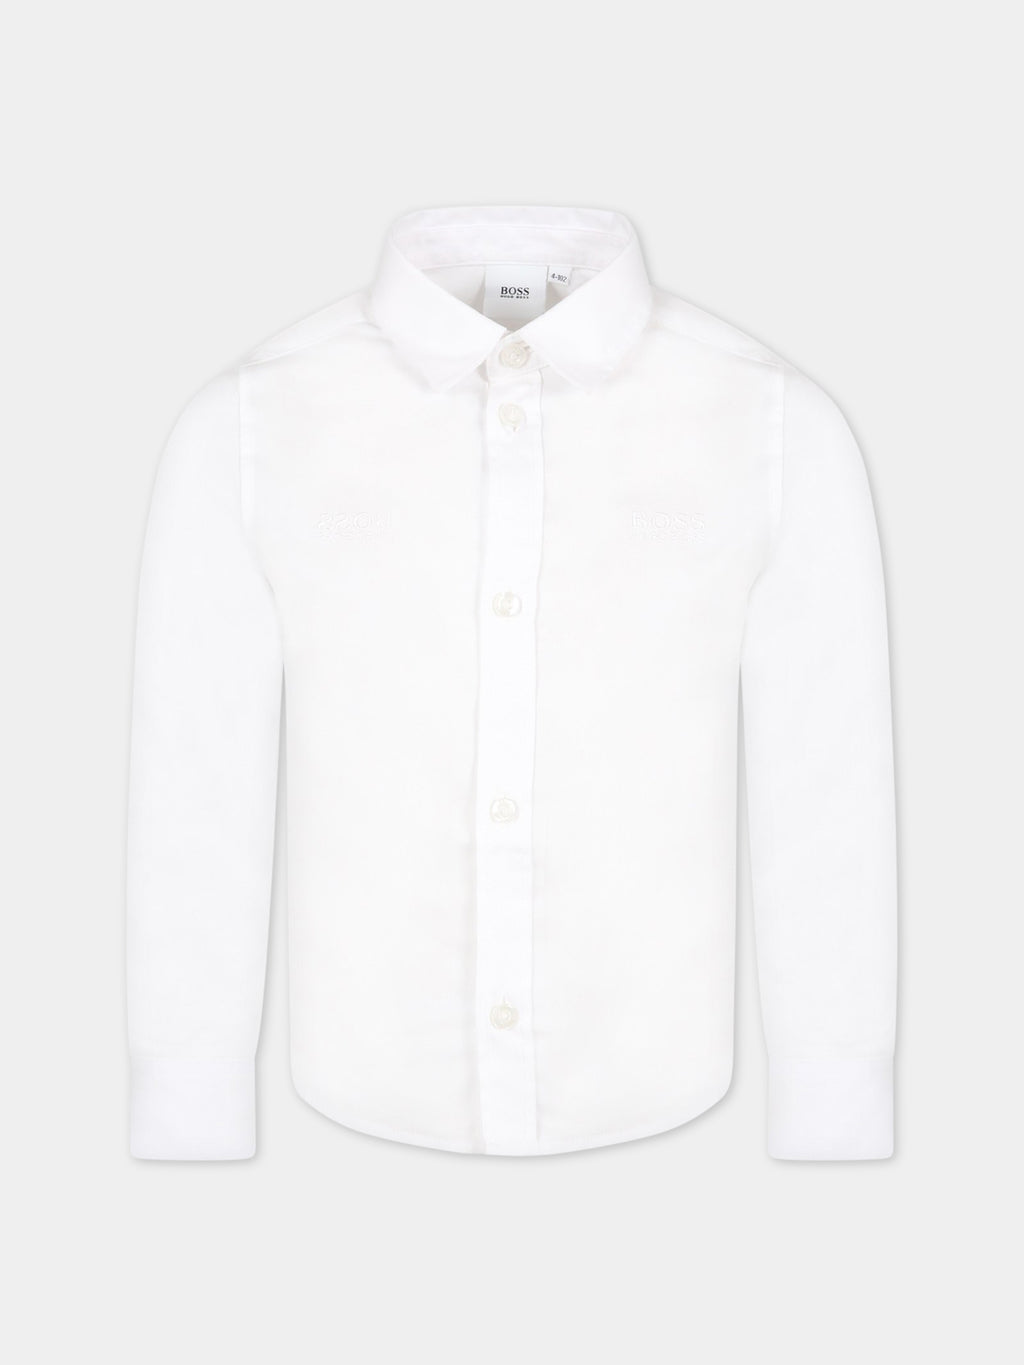 Chemise blanc pour garçon avec logo